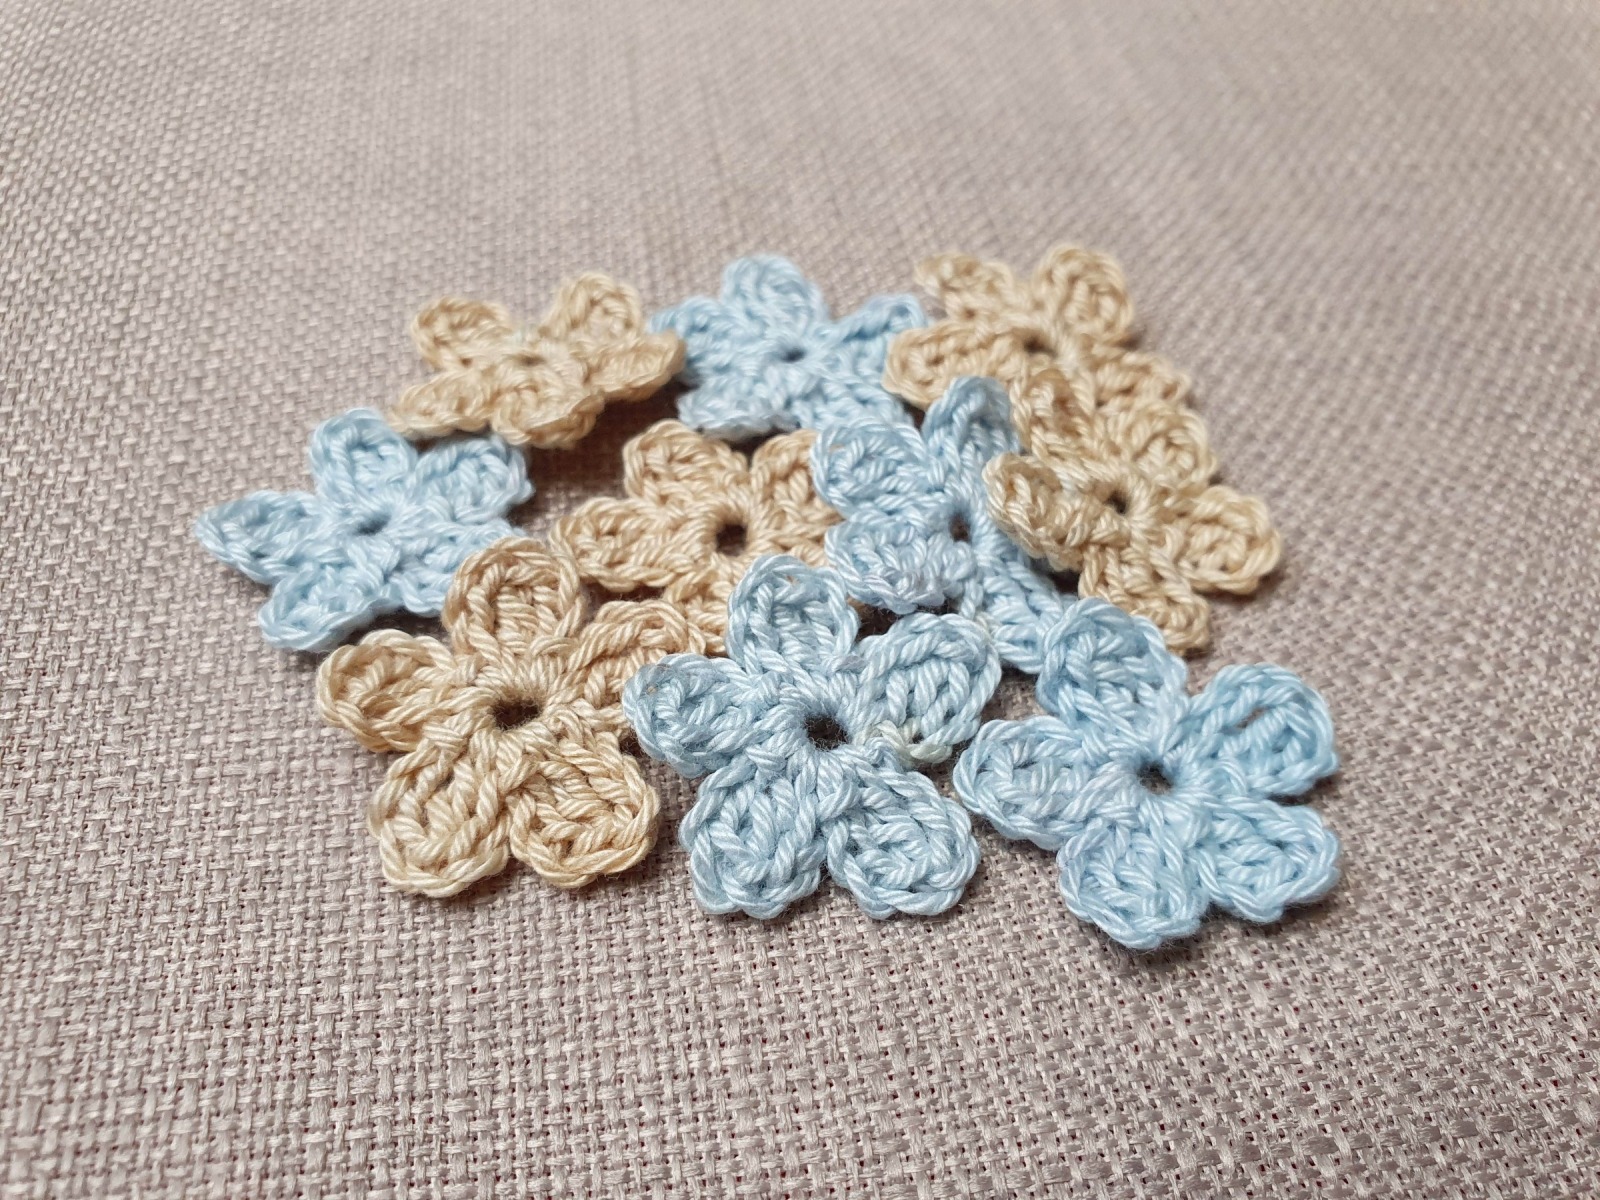 Mini Häkelblumen Set in beige und hellblau - 10 Stück, Durchmesser 2,5 cm aus 100% Baumwolle